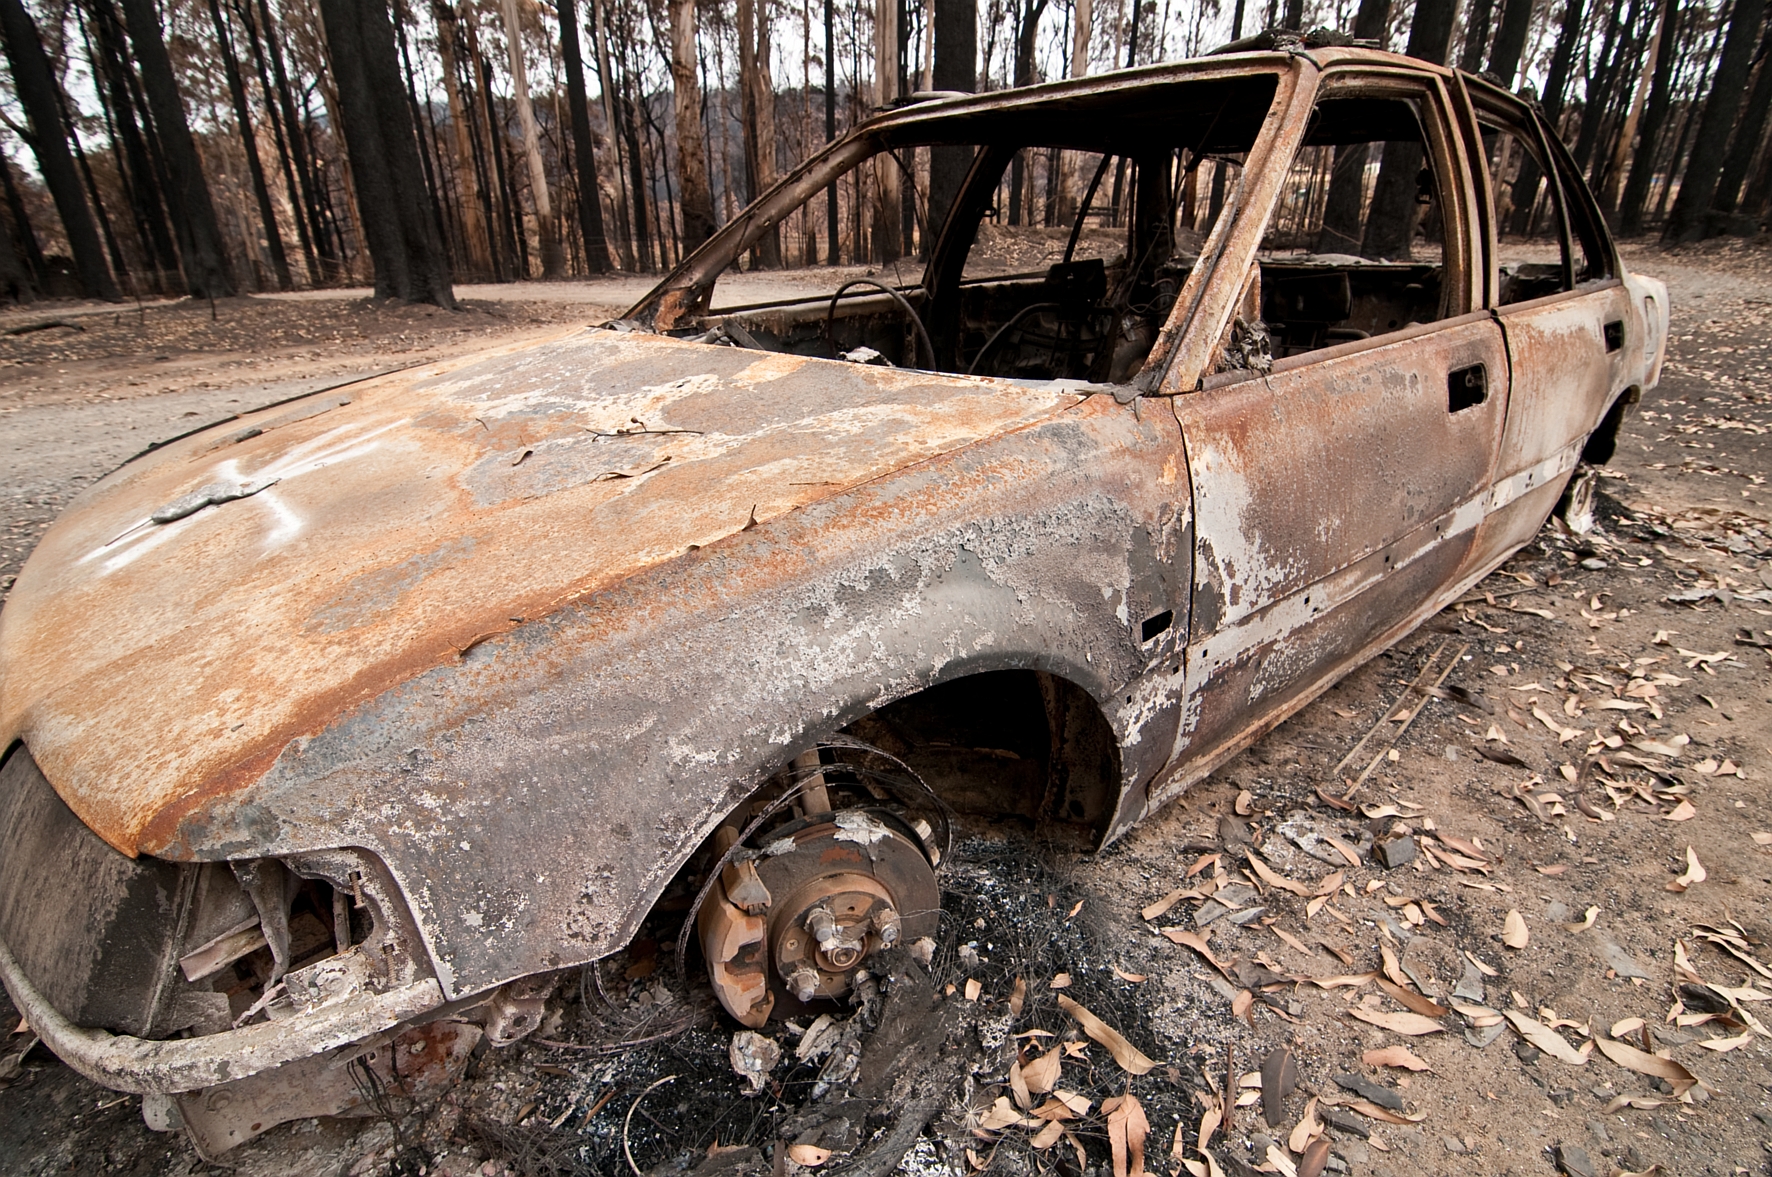 A burnt-out car at Kinglake after the 'Black Saturday' bushfires. Image: CSIRO